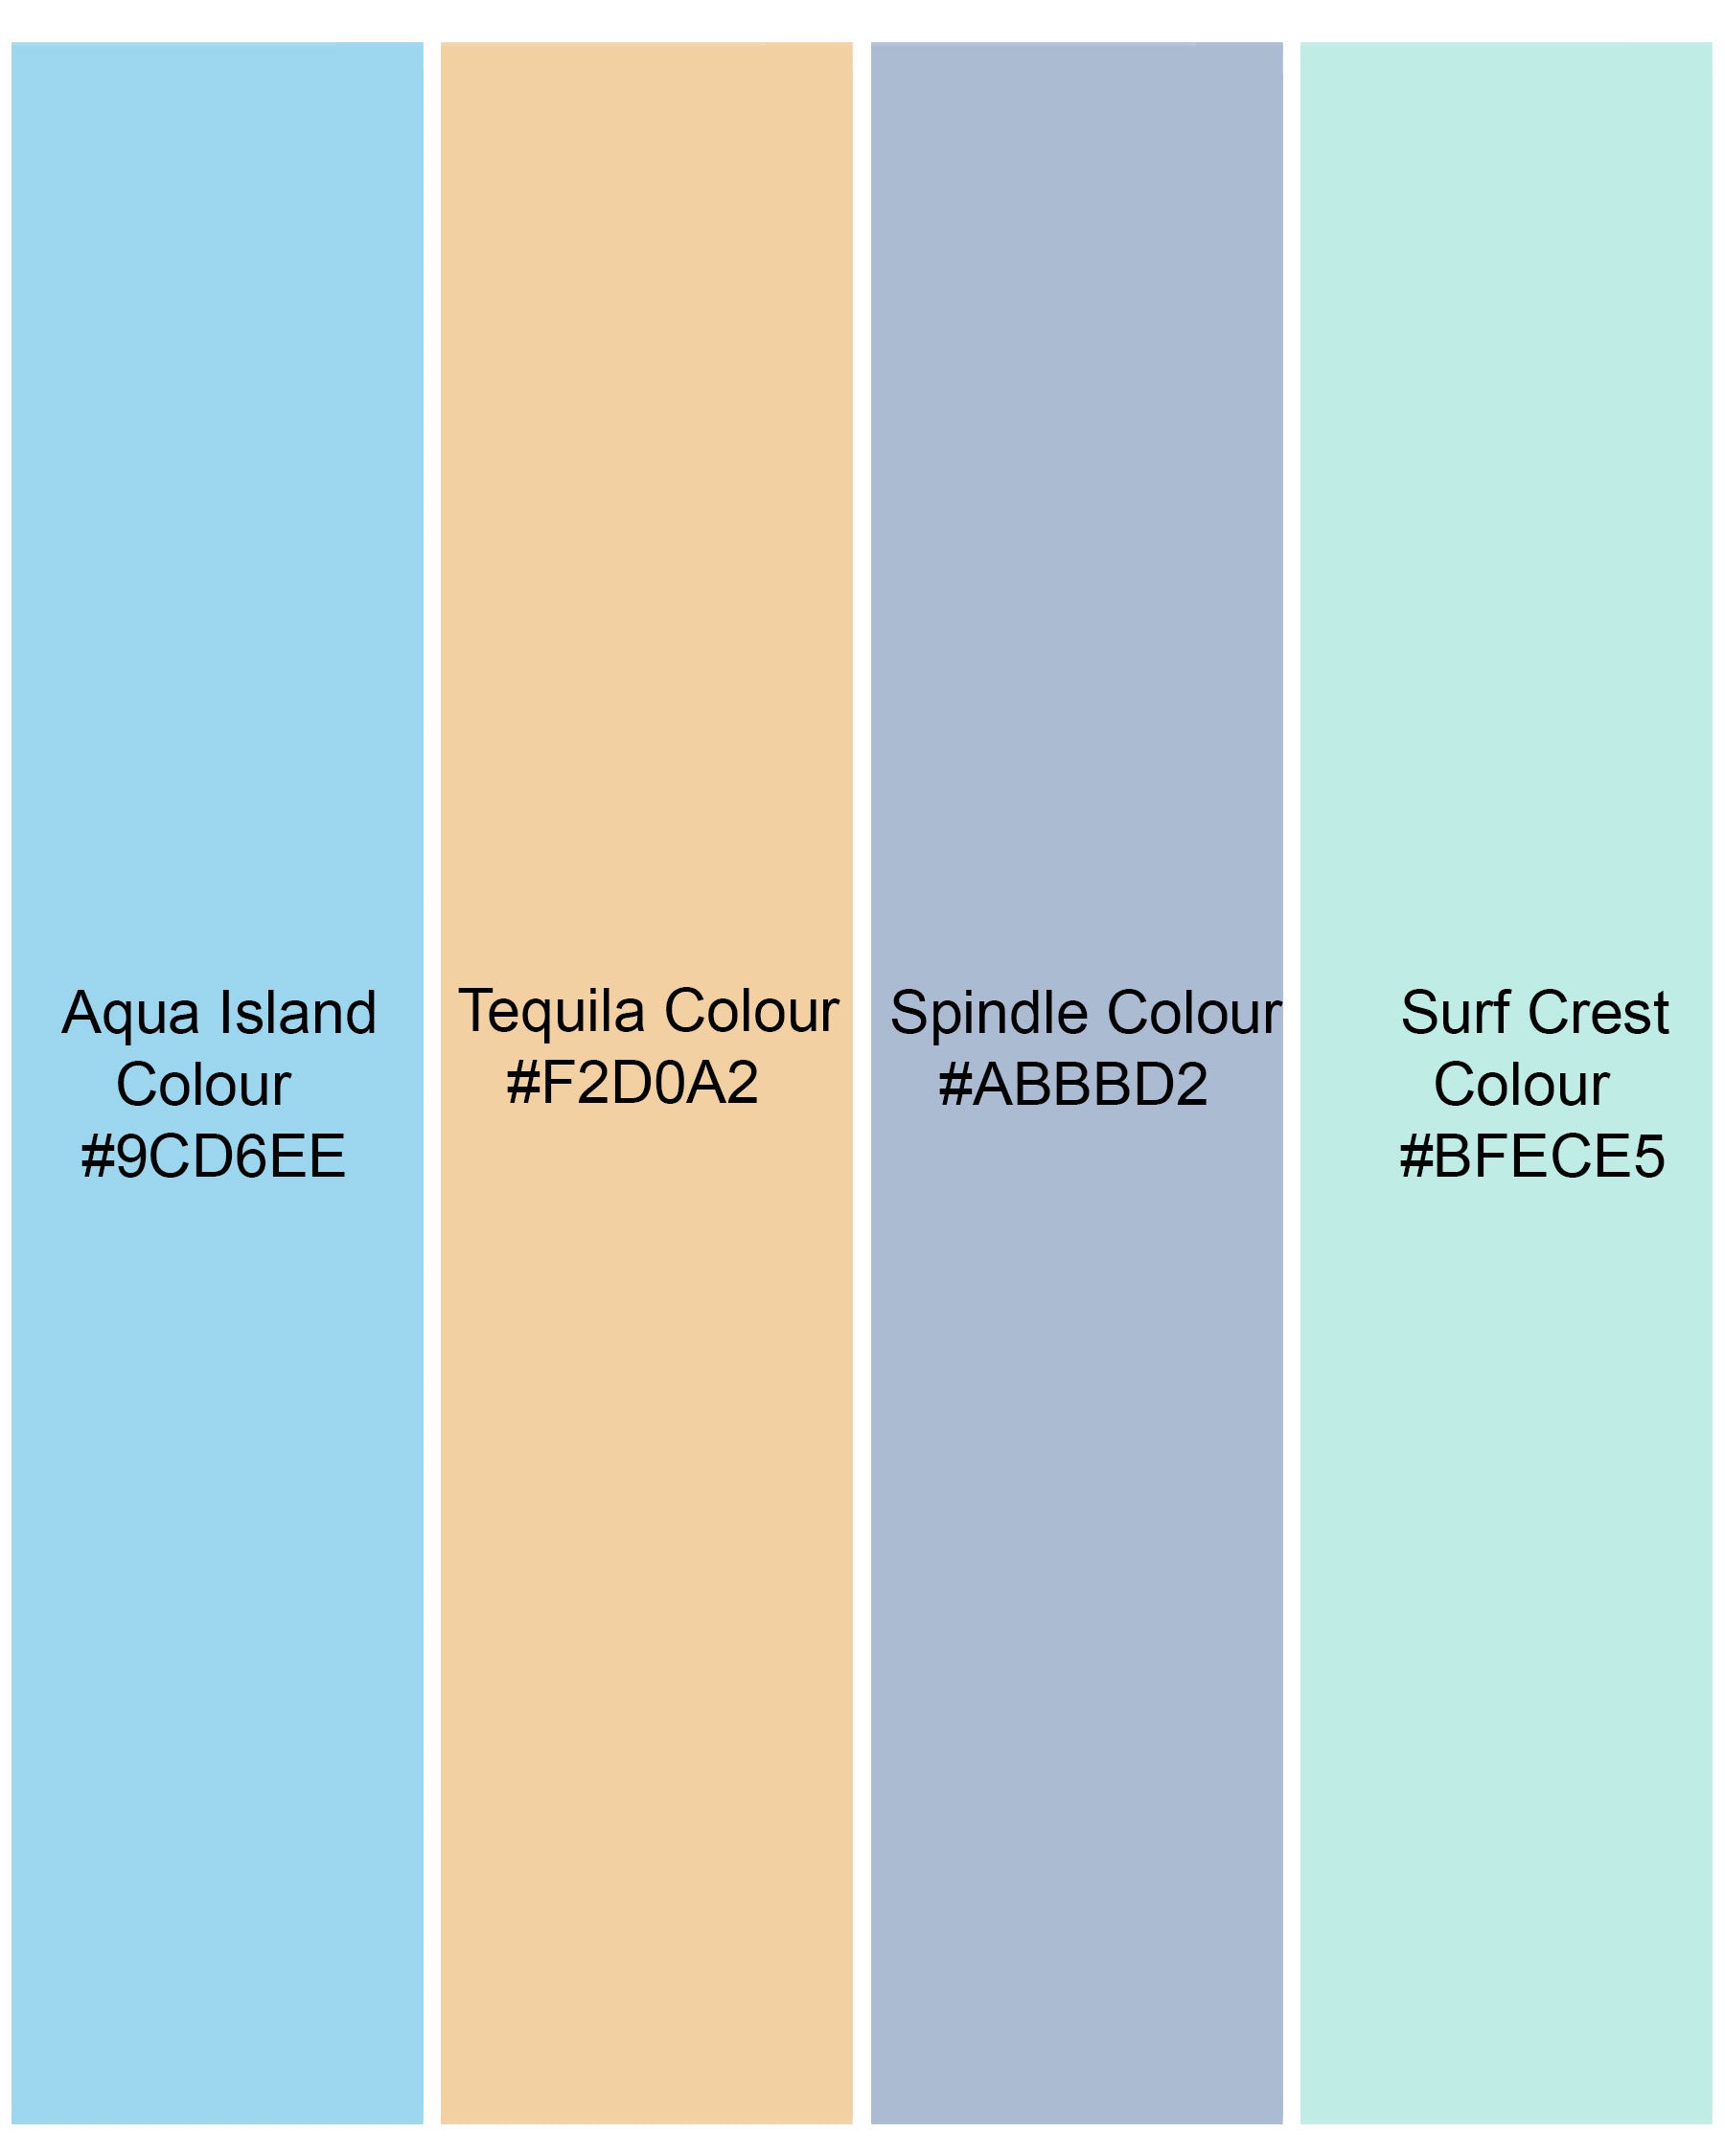 Aqua Island Blue and Surf Crest Green Polka Dotted Premium Tencel Kurta Shirt 7914-KS-38, 7914-KS-H-38, 7914-KS-39, 7914-KS-H-39, 7914-KS-40, 7914-KS-H-40, 7914-KS-42, 7914-KS-H-42, 7914-KS-44, 7914-KS-H-44, 7914-KS-46, 7914-KS-H-46, 7914-KS-48, 7914-KS-H-48, 7914-KS-50, 7914-KS-H-50, 7914-KS-52, 7914-KS-H-52